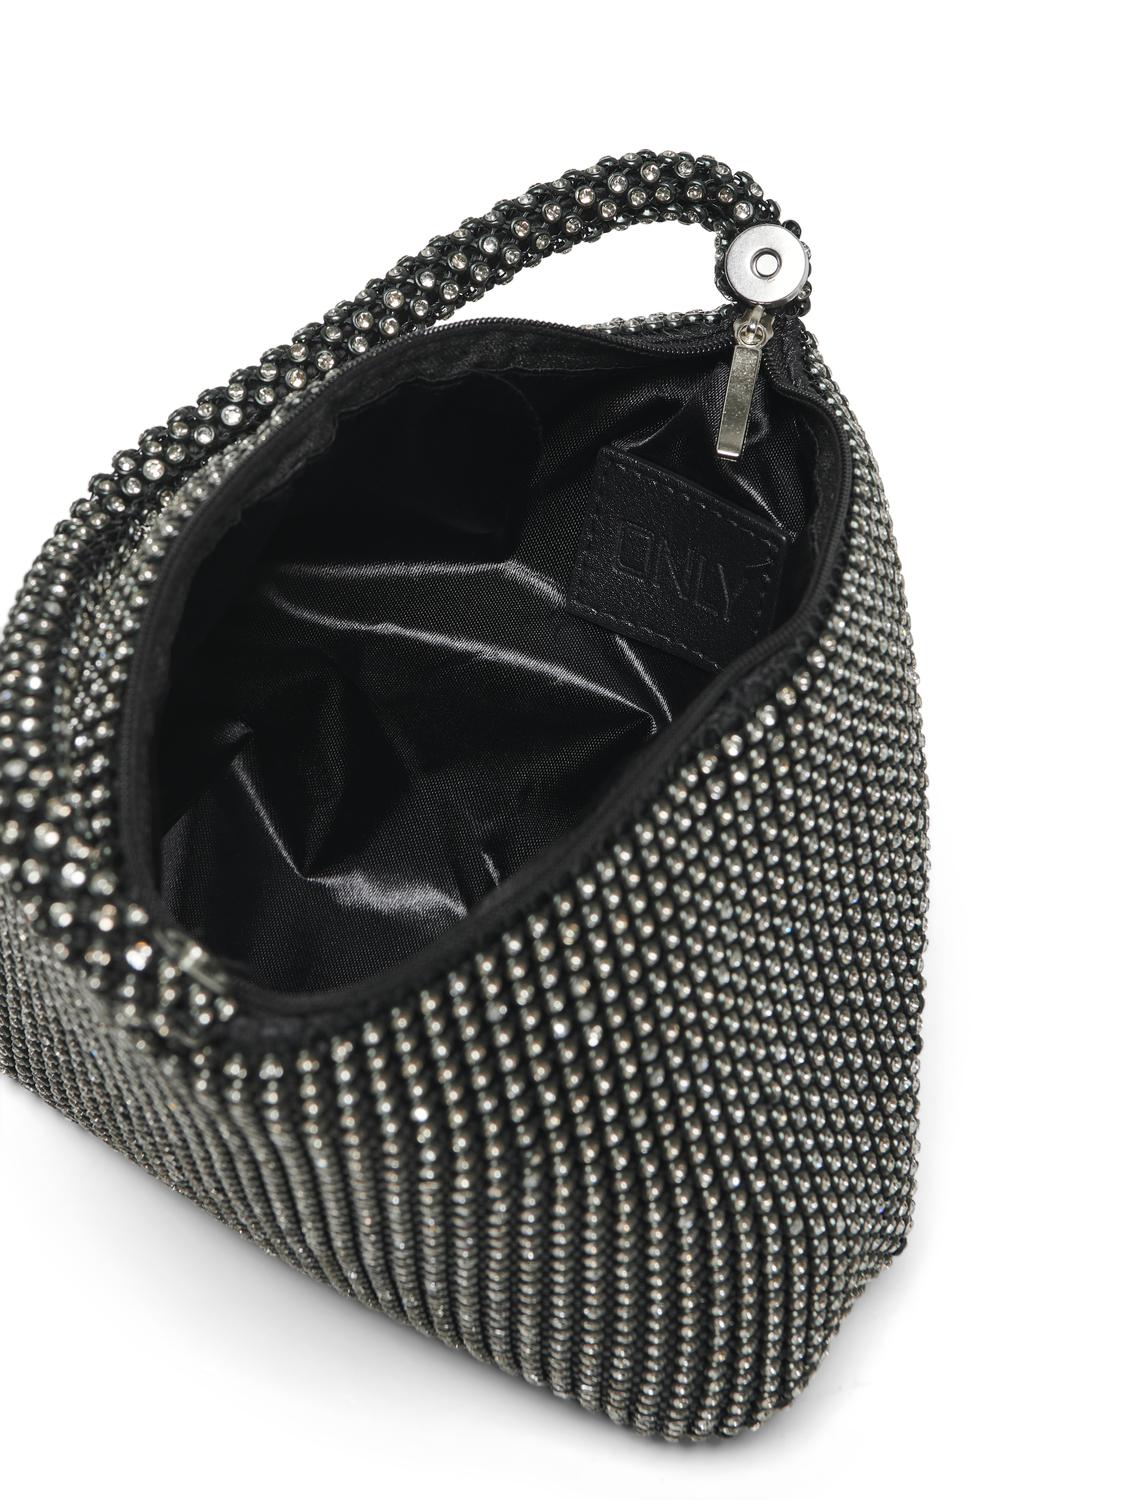 ONLAUDREY Handbag - Black